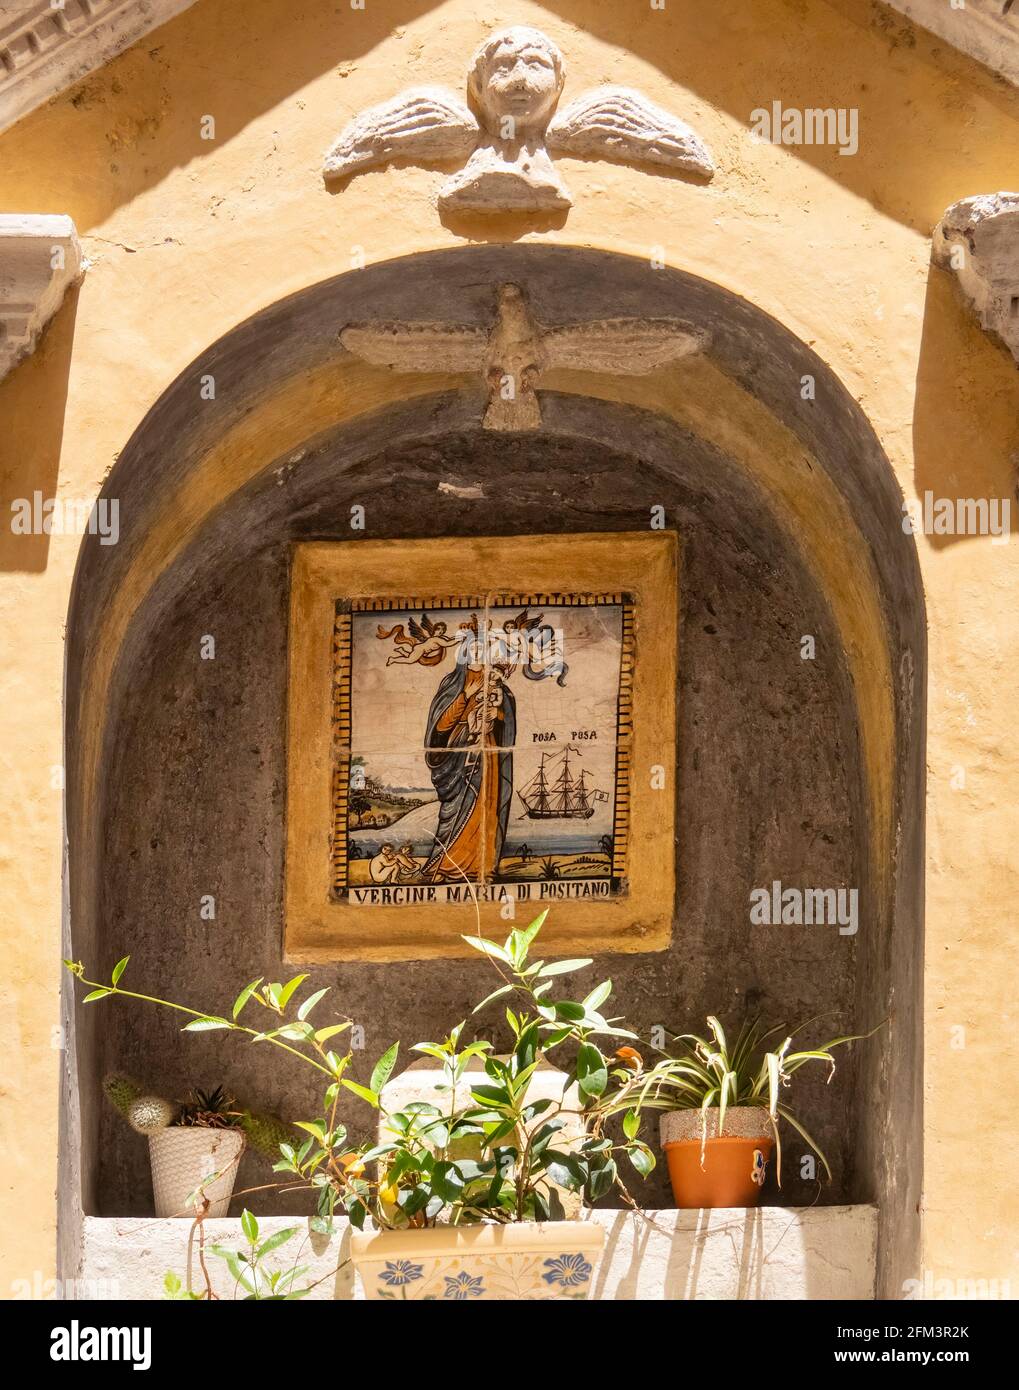 POSITANO, ITALIA - 14 GIUGNO 2019: Foto di una piastrella ceamica della vergine maria di positano in mostra in una nicchia della Costiera amalfitana Foto Stock